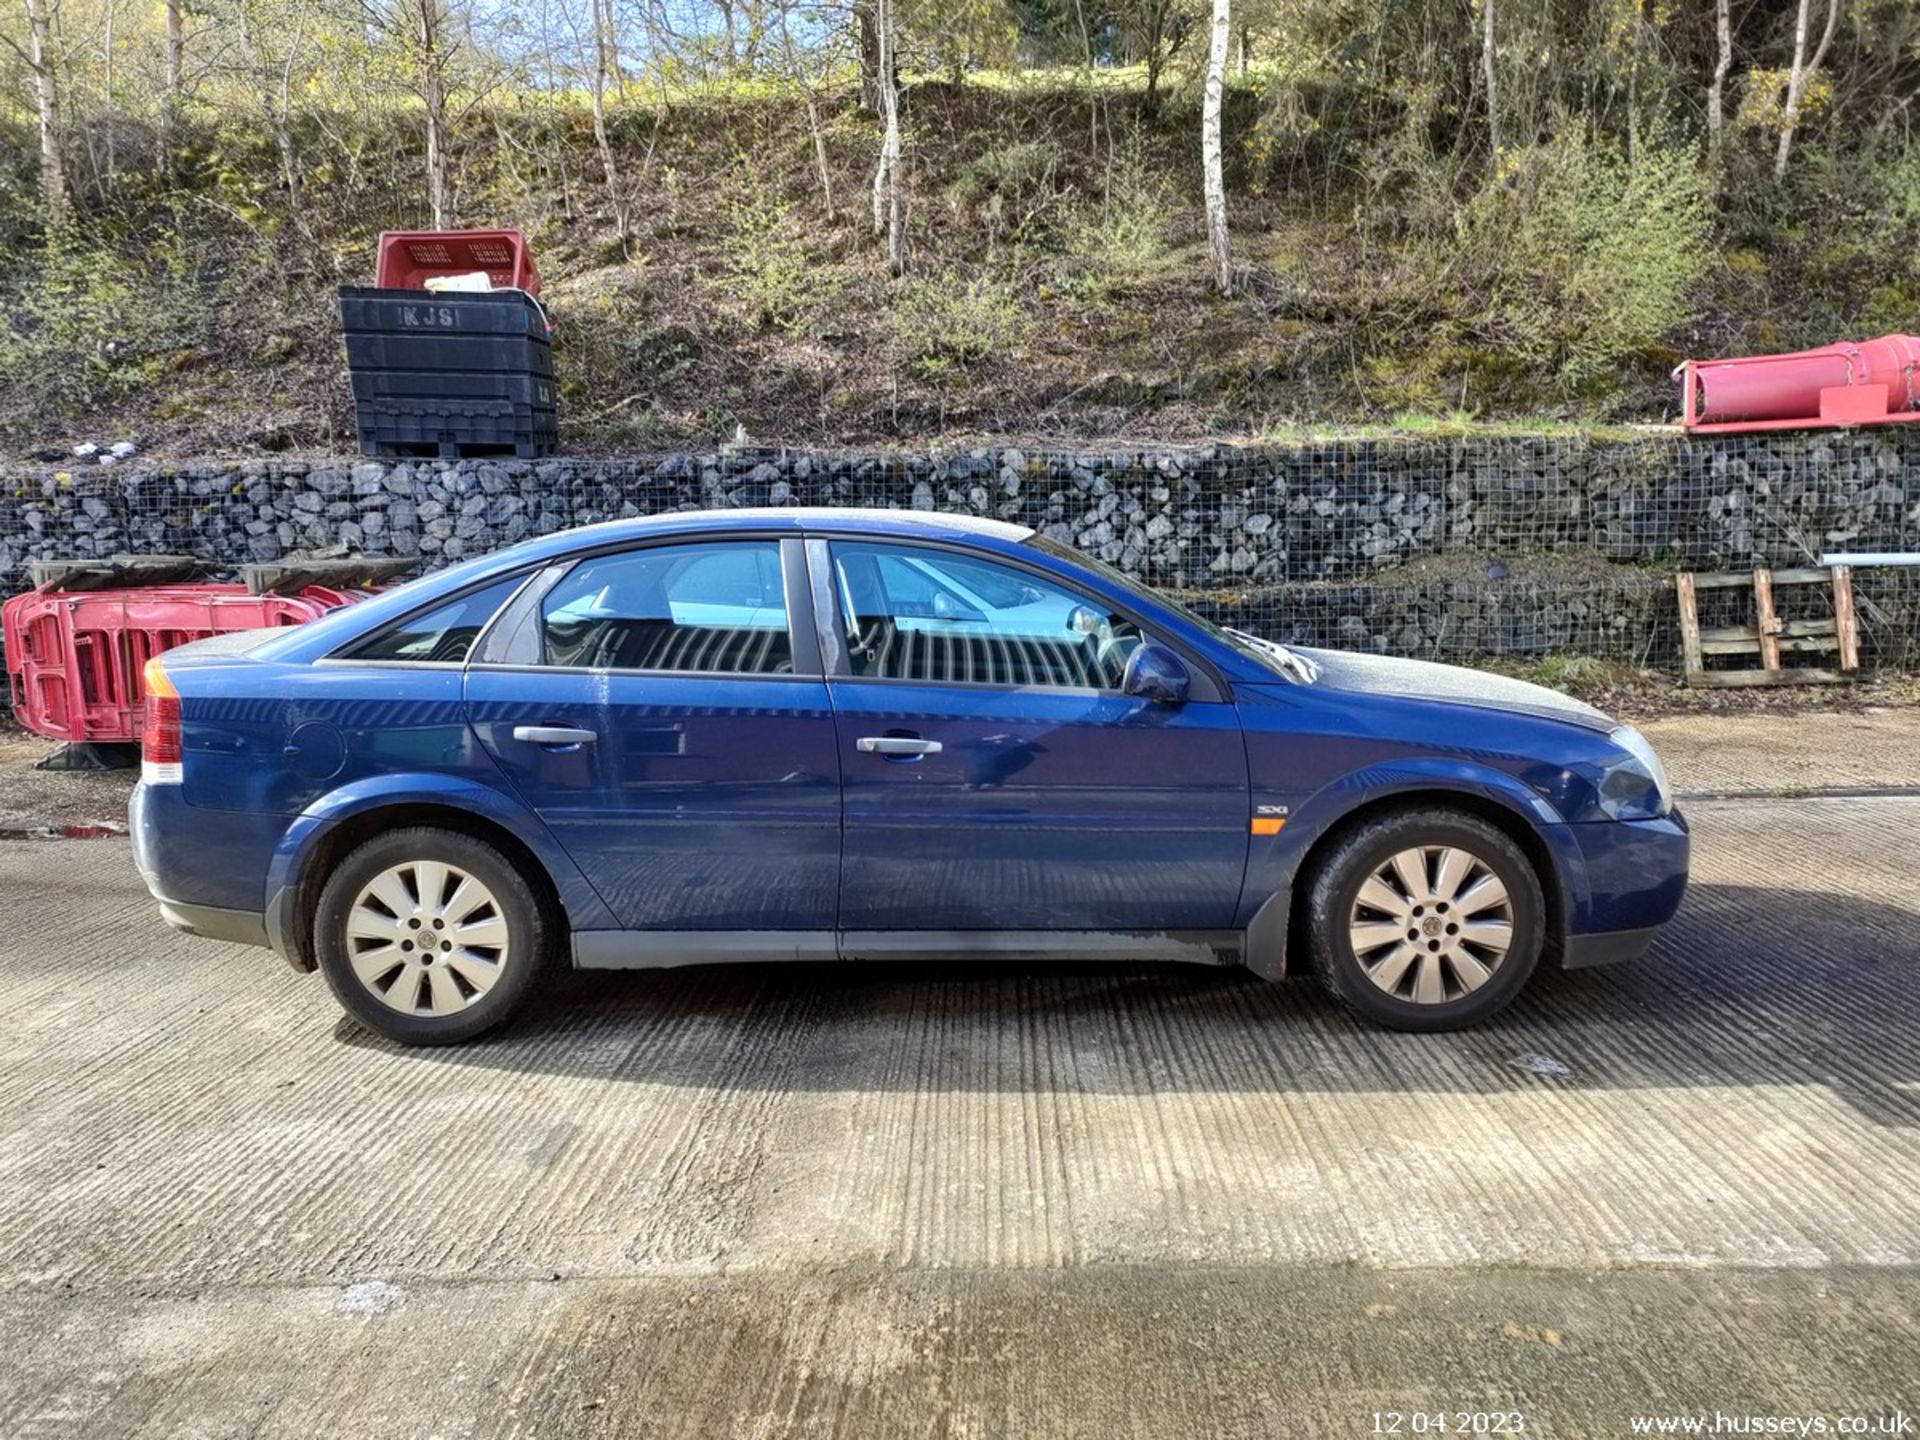 03/03 VAUXHALL VECTRA SXI 16V - 1796cc 5dr Hatchback (Blue) - Image 28 of 40